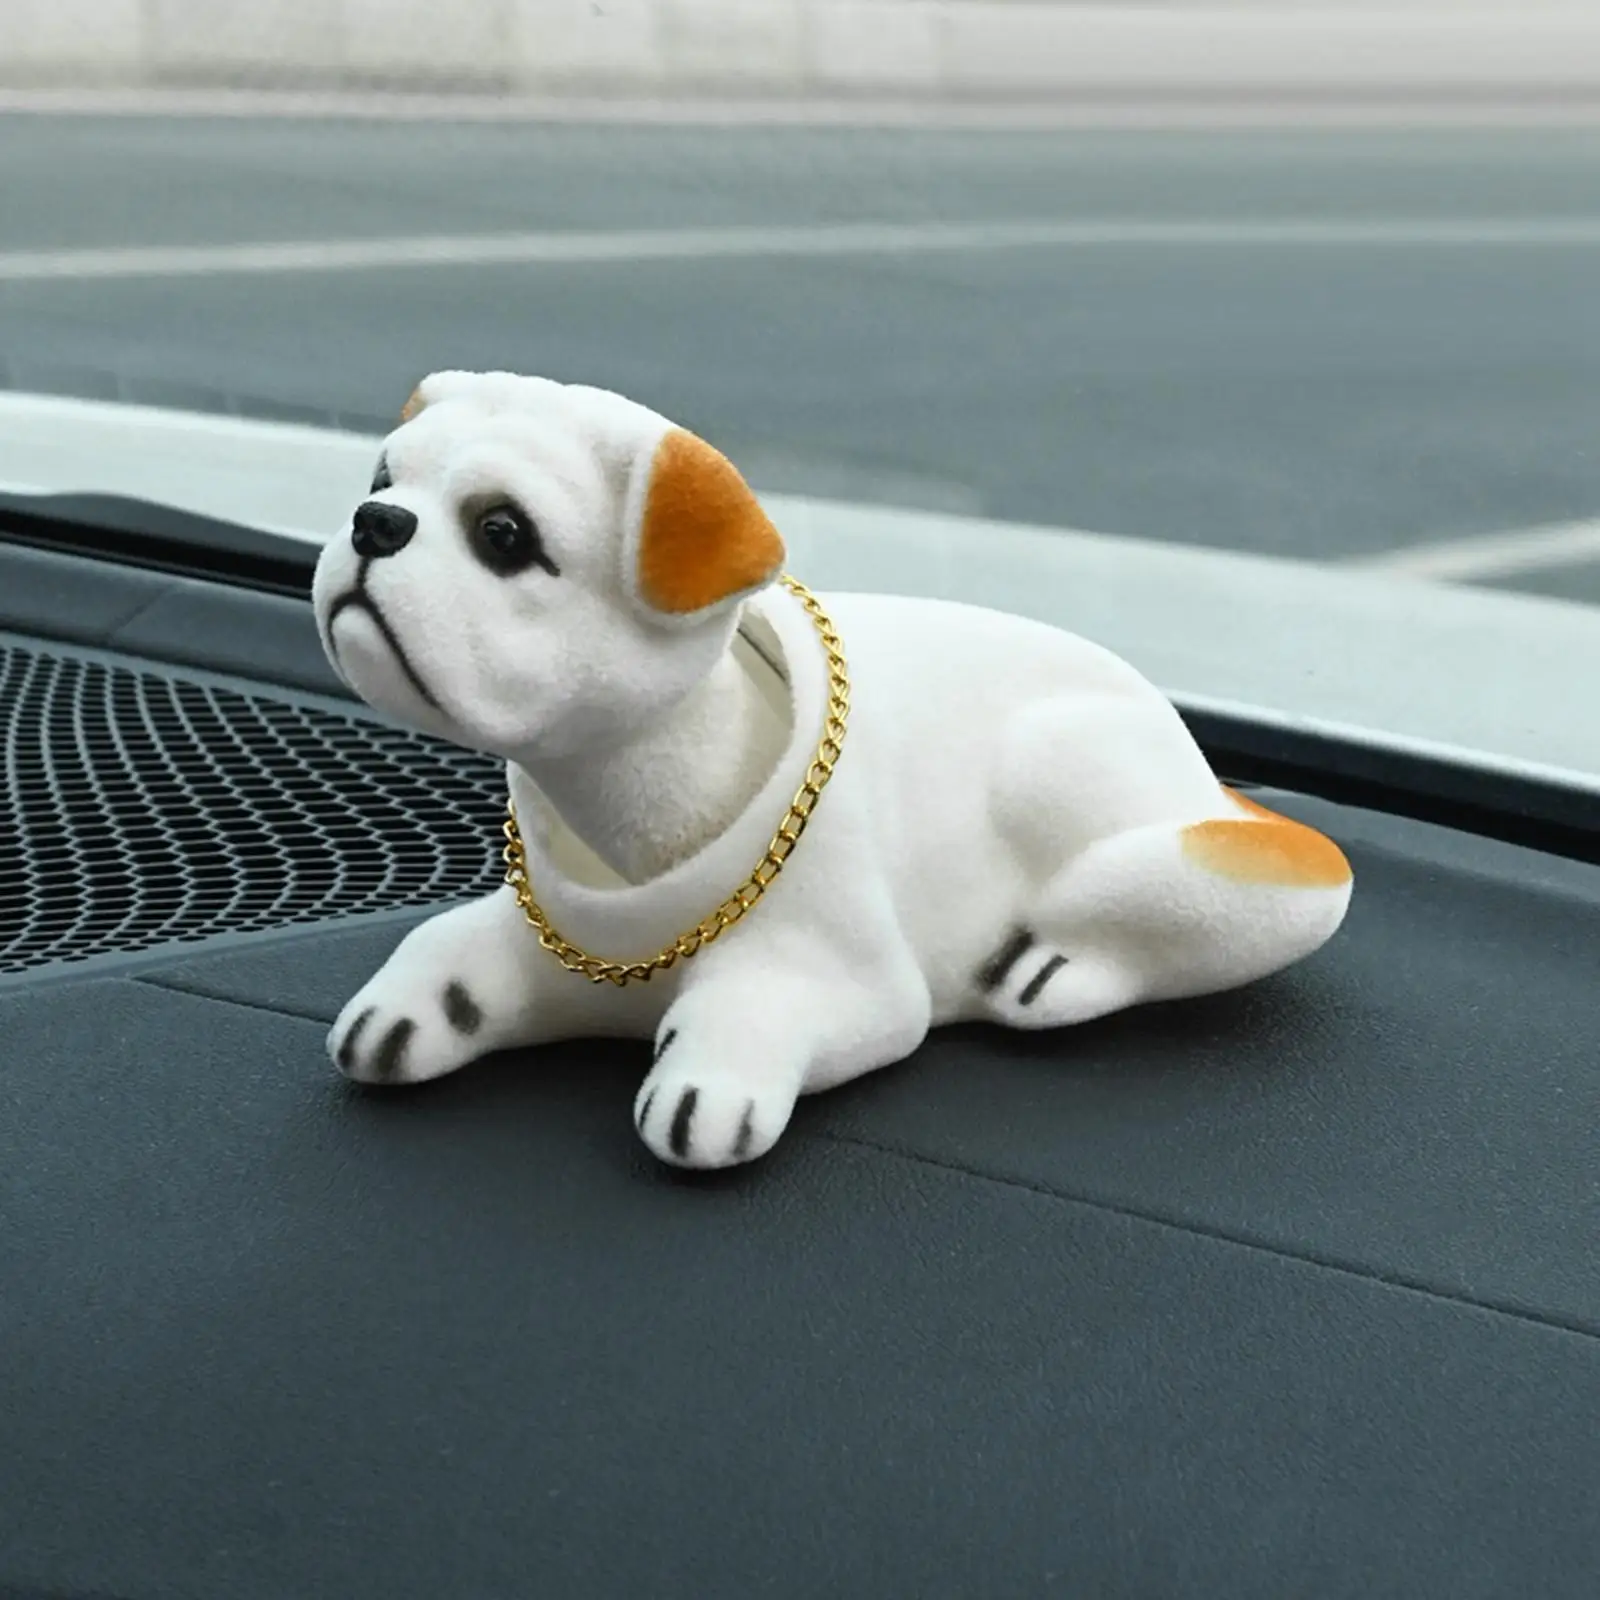 Ebow Dashboard Head Dogs Nodding Heads Car Dash Ornaments Puppy